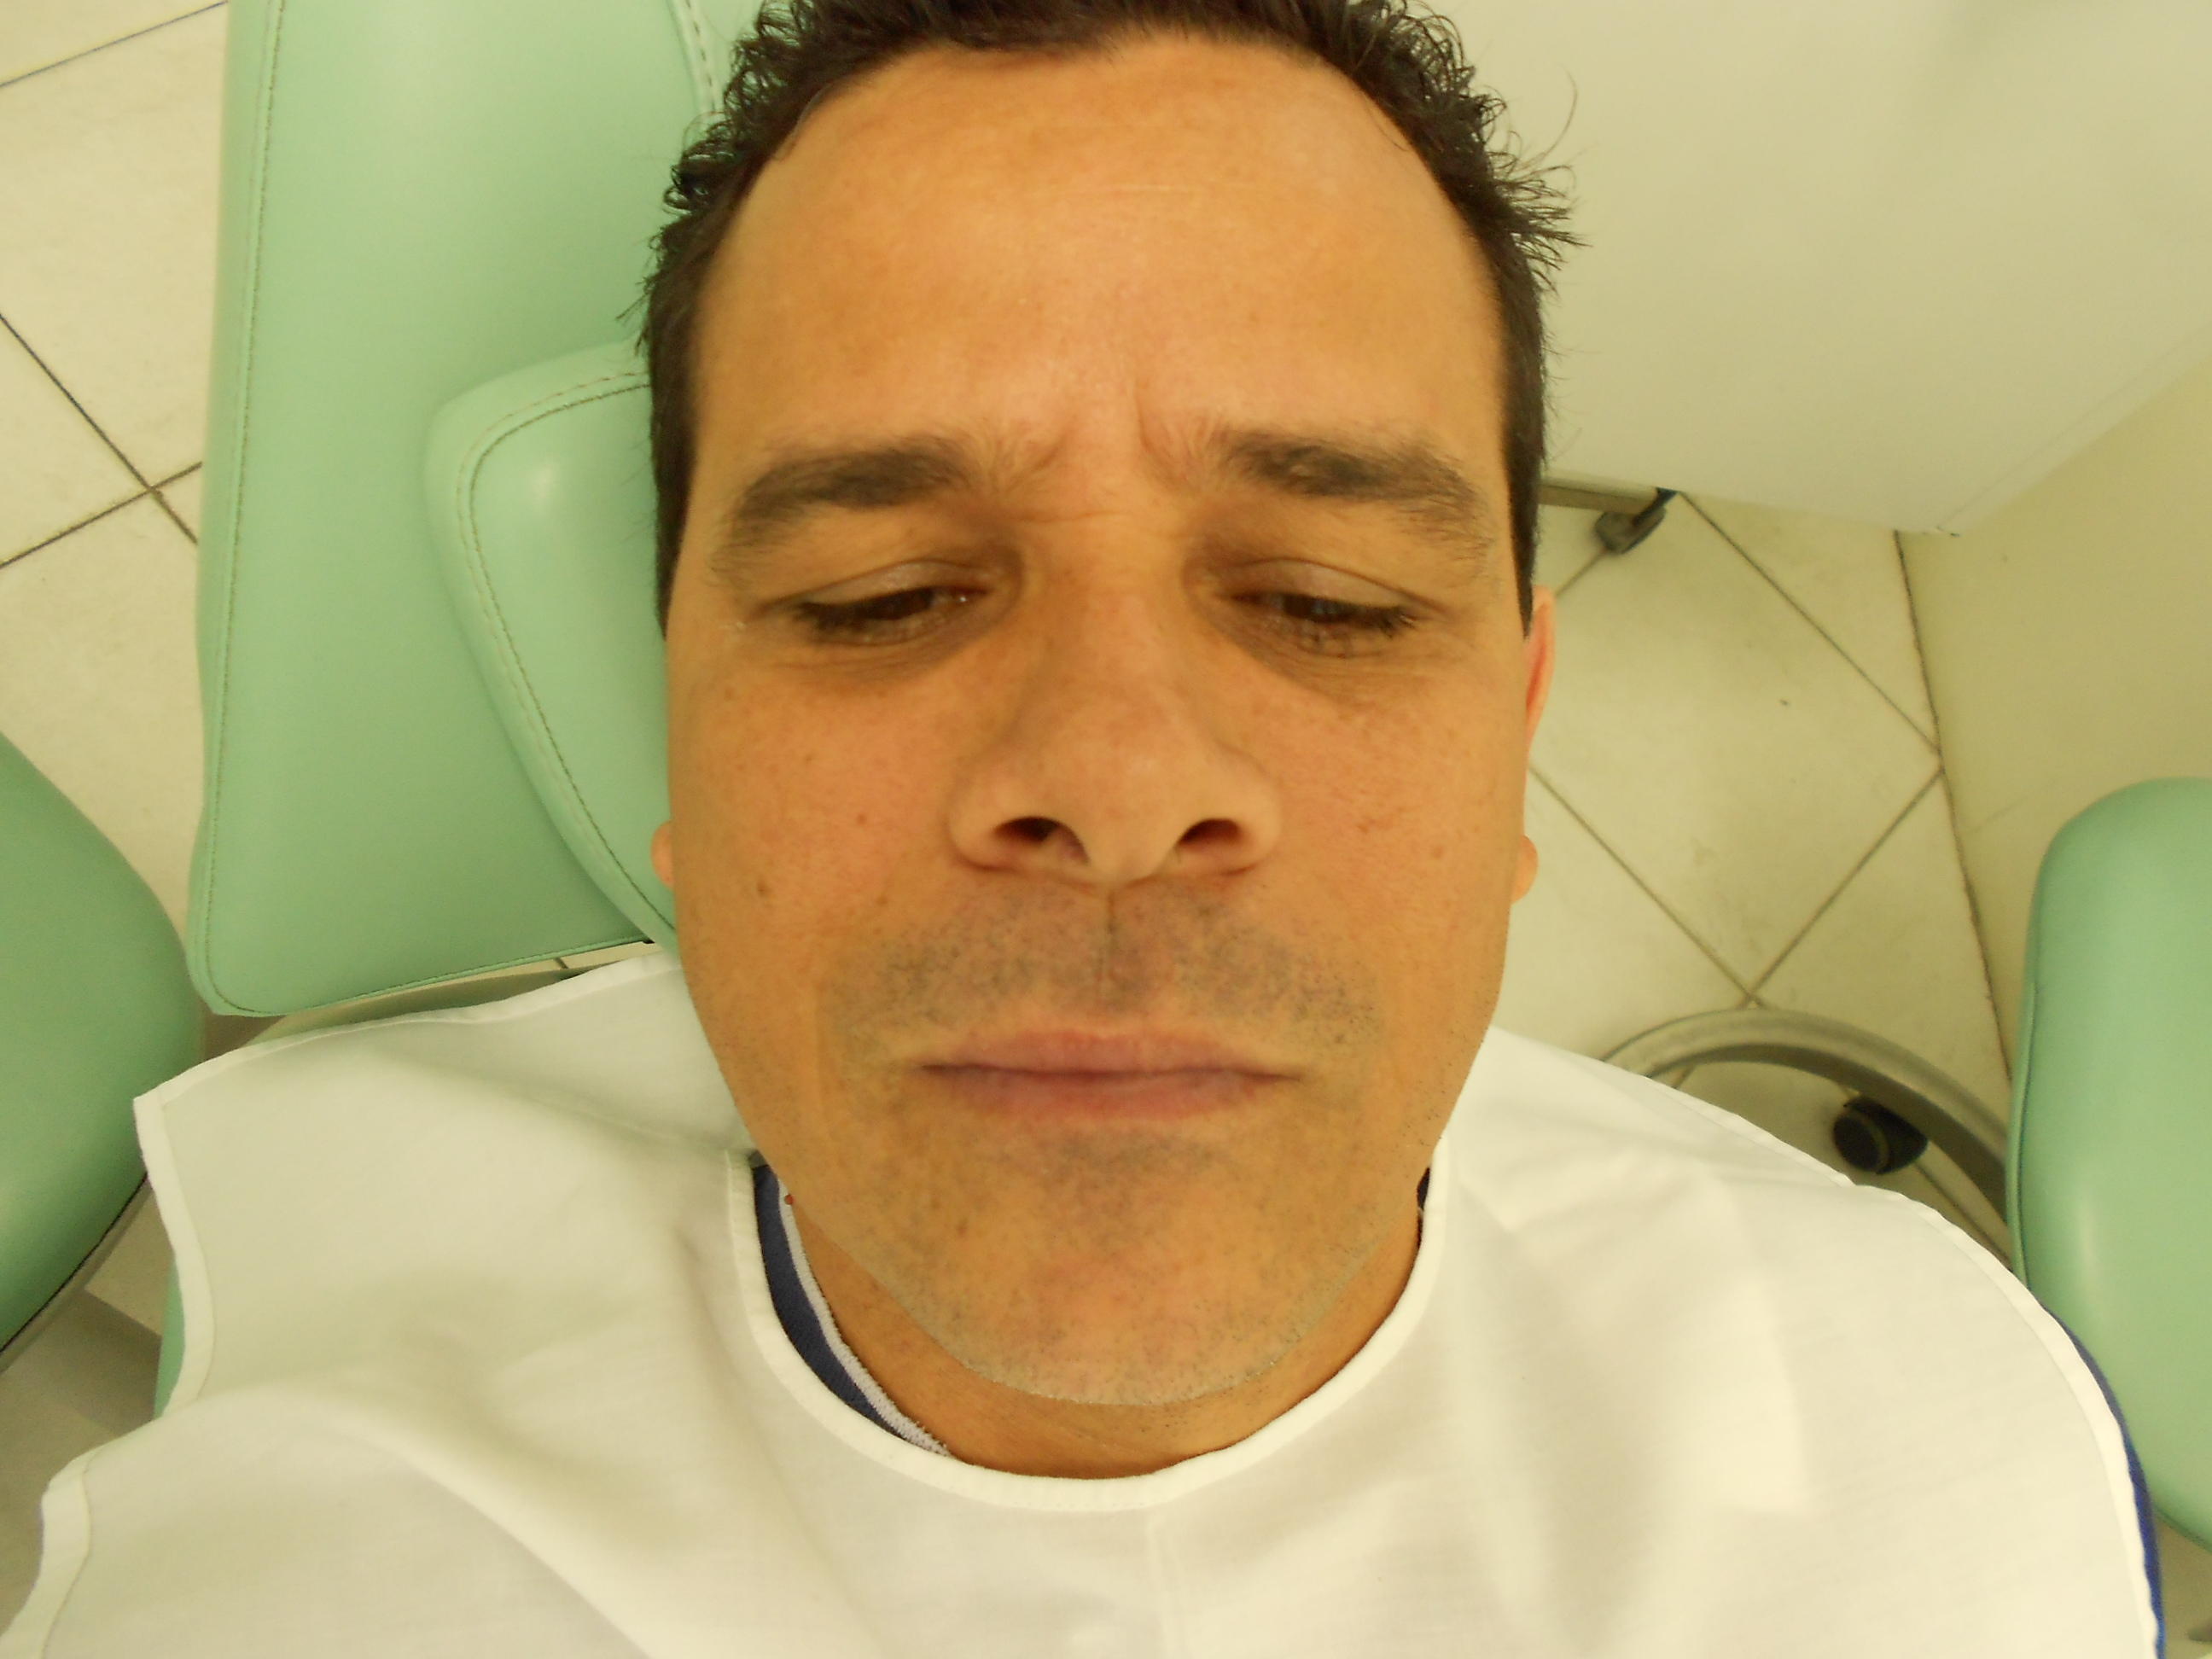 20 4 CASO CLÍNICO Paciente J.E.M em julho de 2012 procurou atendimento odontológico, em consultório particular, para tratamento ortodôntico.